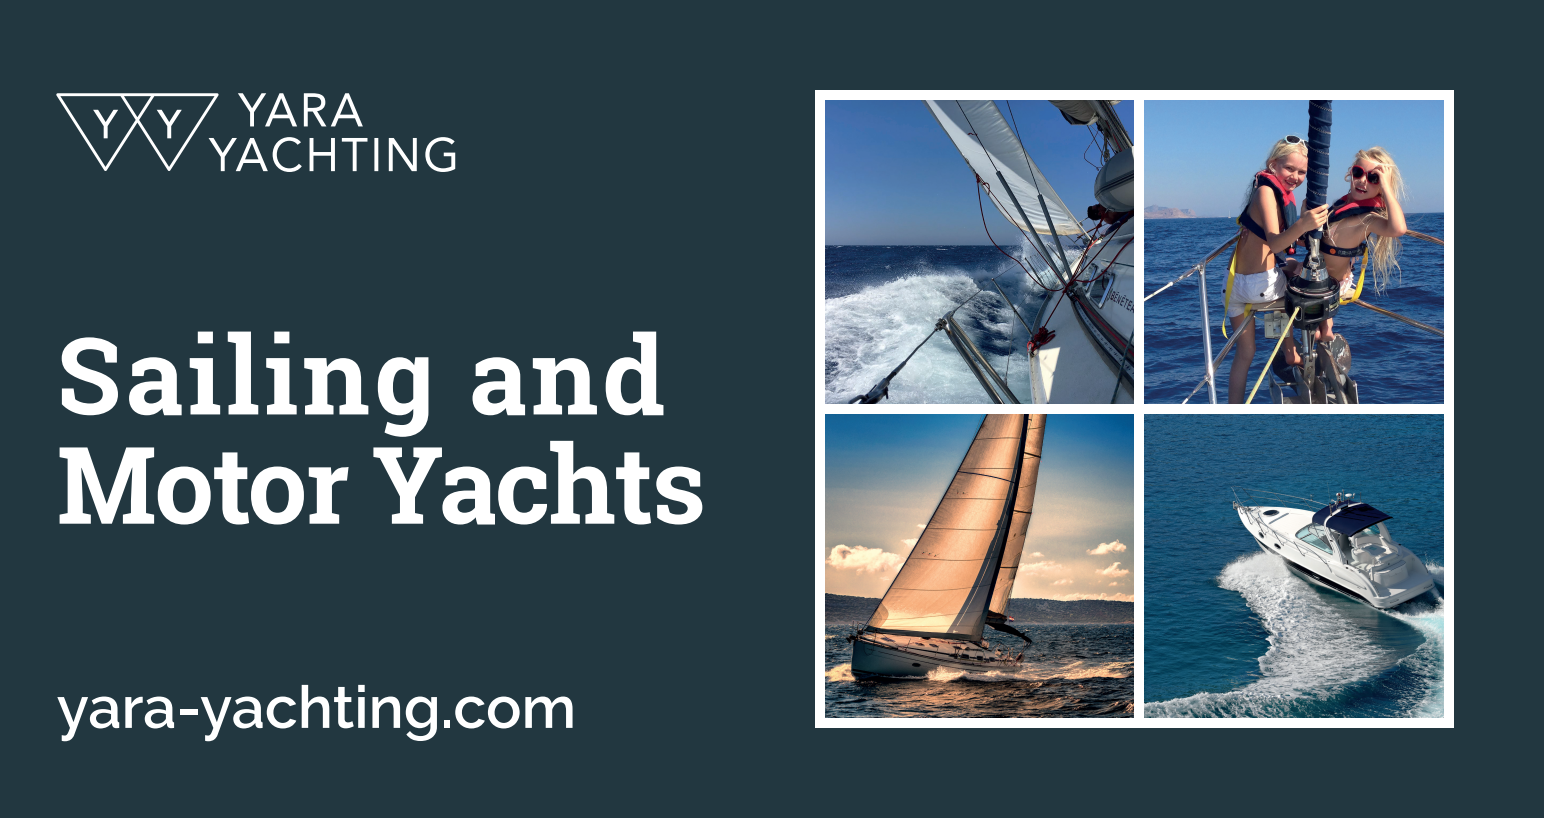 Yara Yachting - sailing and motoryacht excursions Rhodes